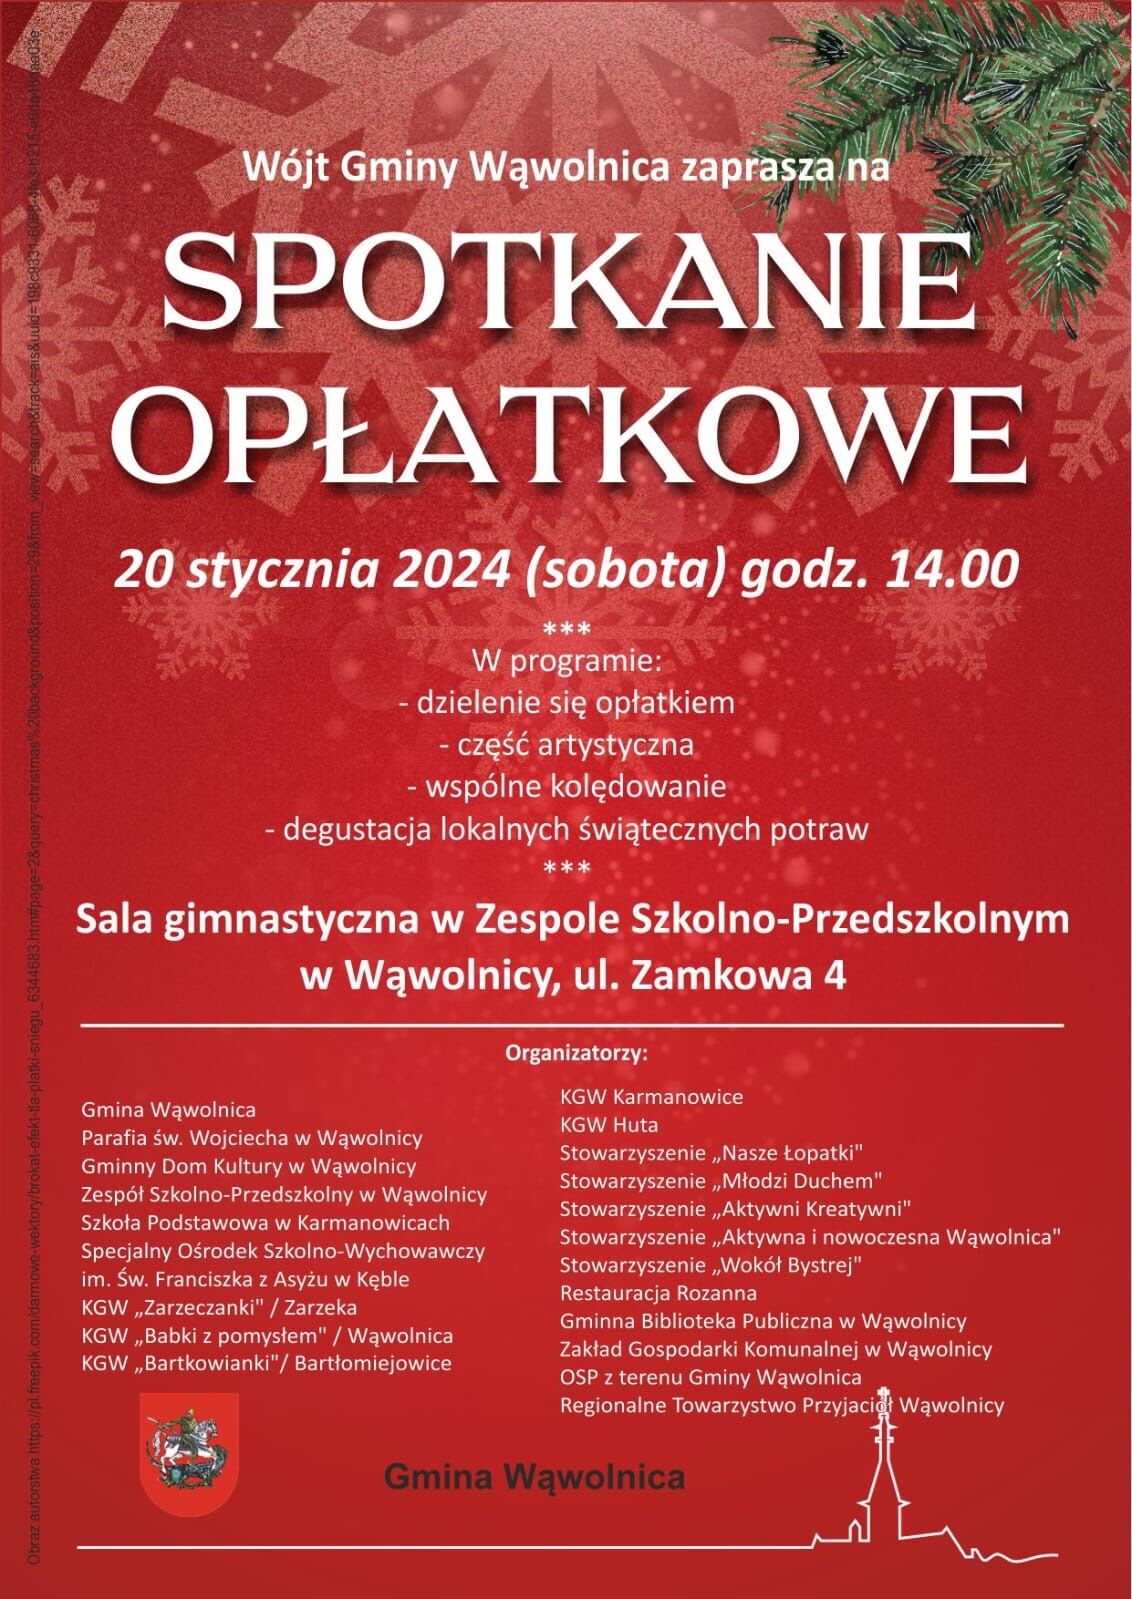 Zdjęcie plakatu wydarzenia z czerwonobiałymi elementami graficznymi. Tekst zaprasza na "Spotkania Oplatkowe" wraz z informacją o programie, datą, miejscem i organizatorach.